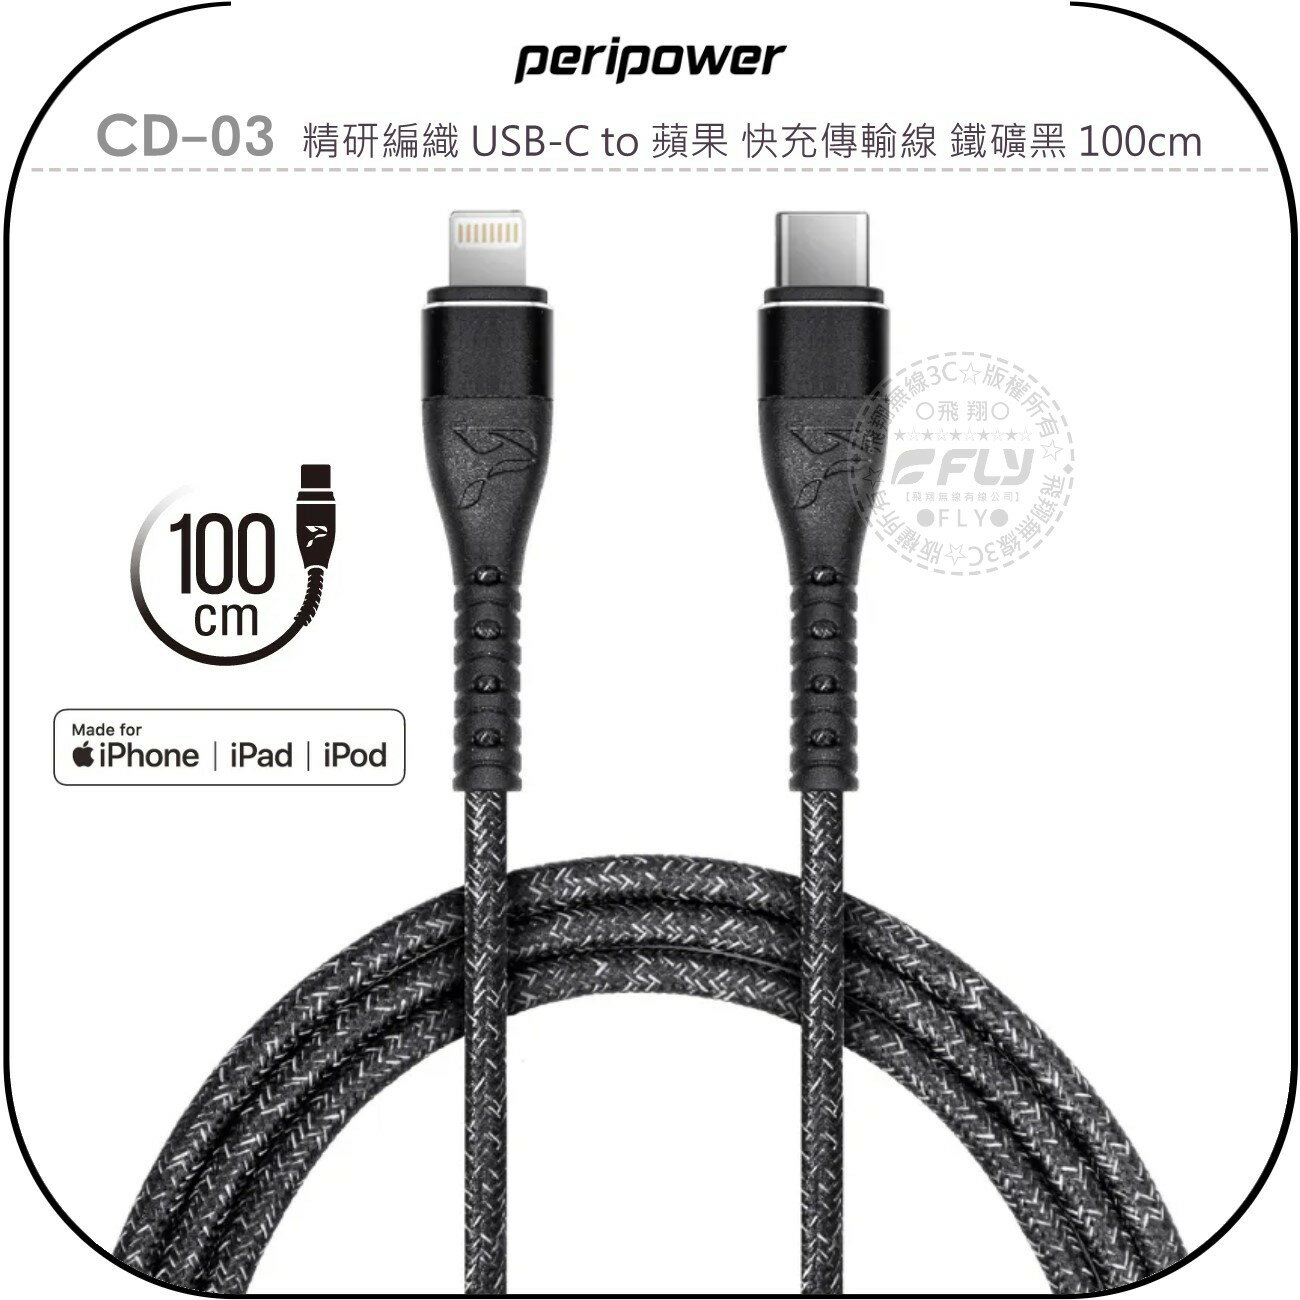 《飛翔無線3C》peripower CD-03 精研編織 USB-C to 蘋果 快充傳輸線 鐵礦黑 100cm